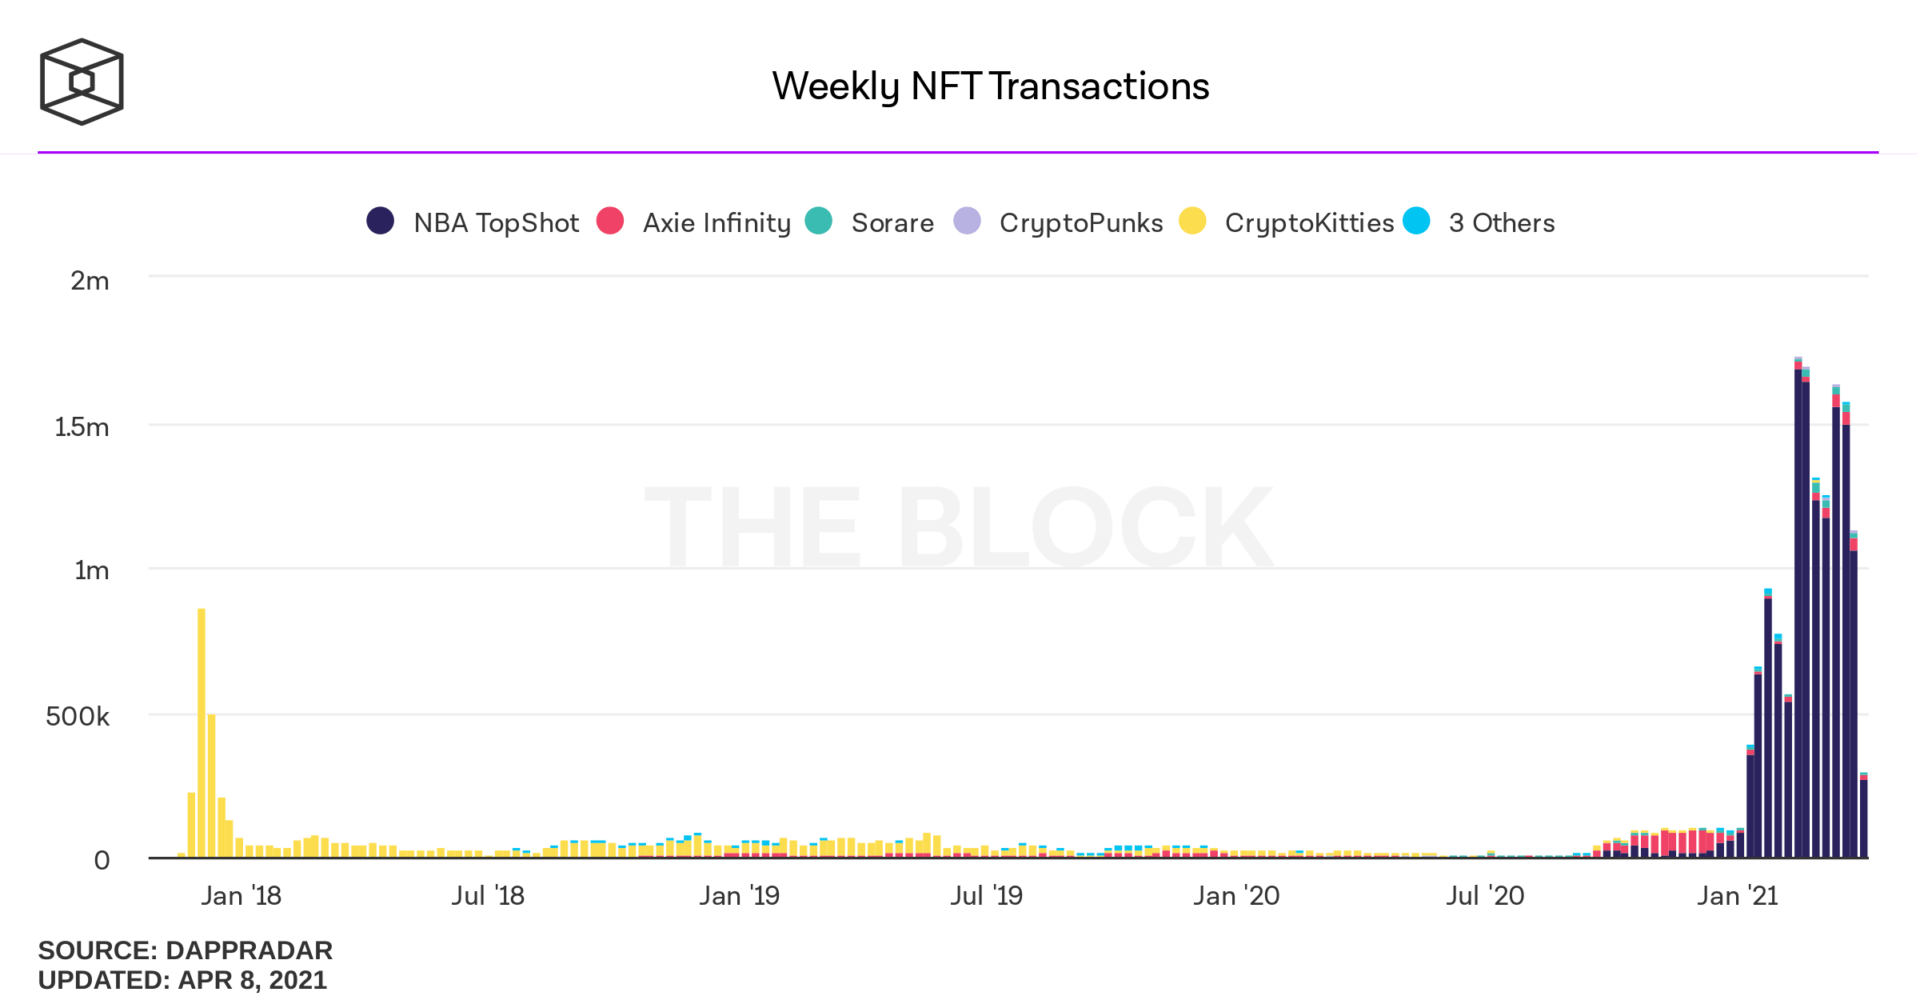 Volume de transaction hebdomadaire sur les huit principales applications de NFT mesuré en milliards de dollars